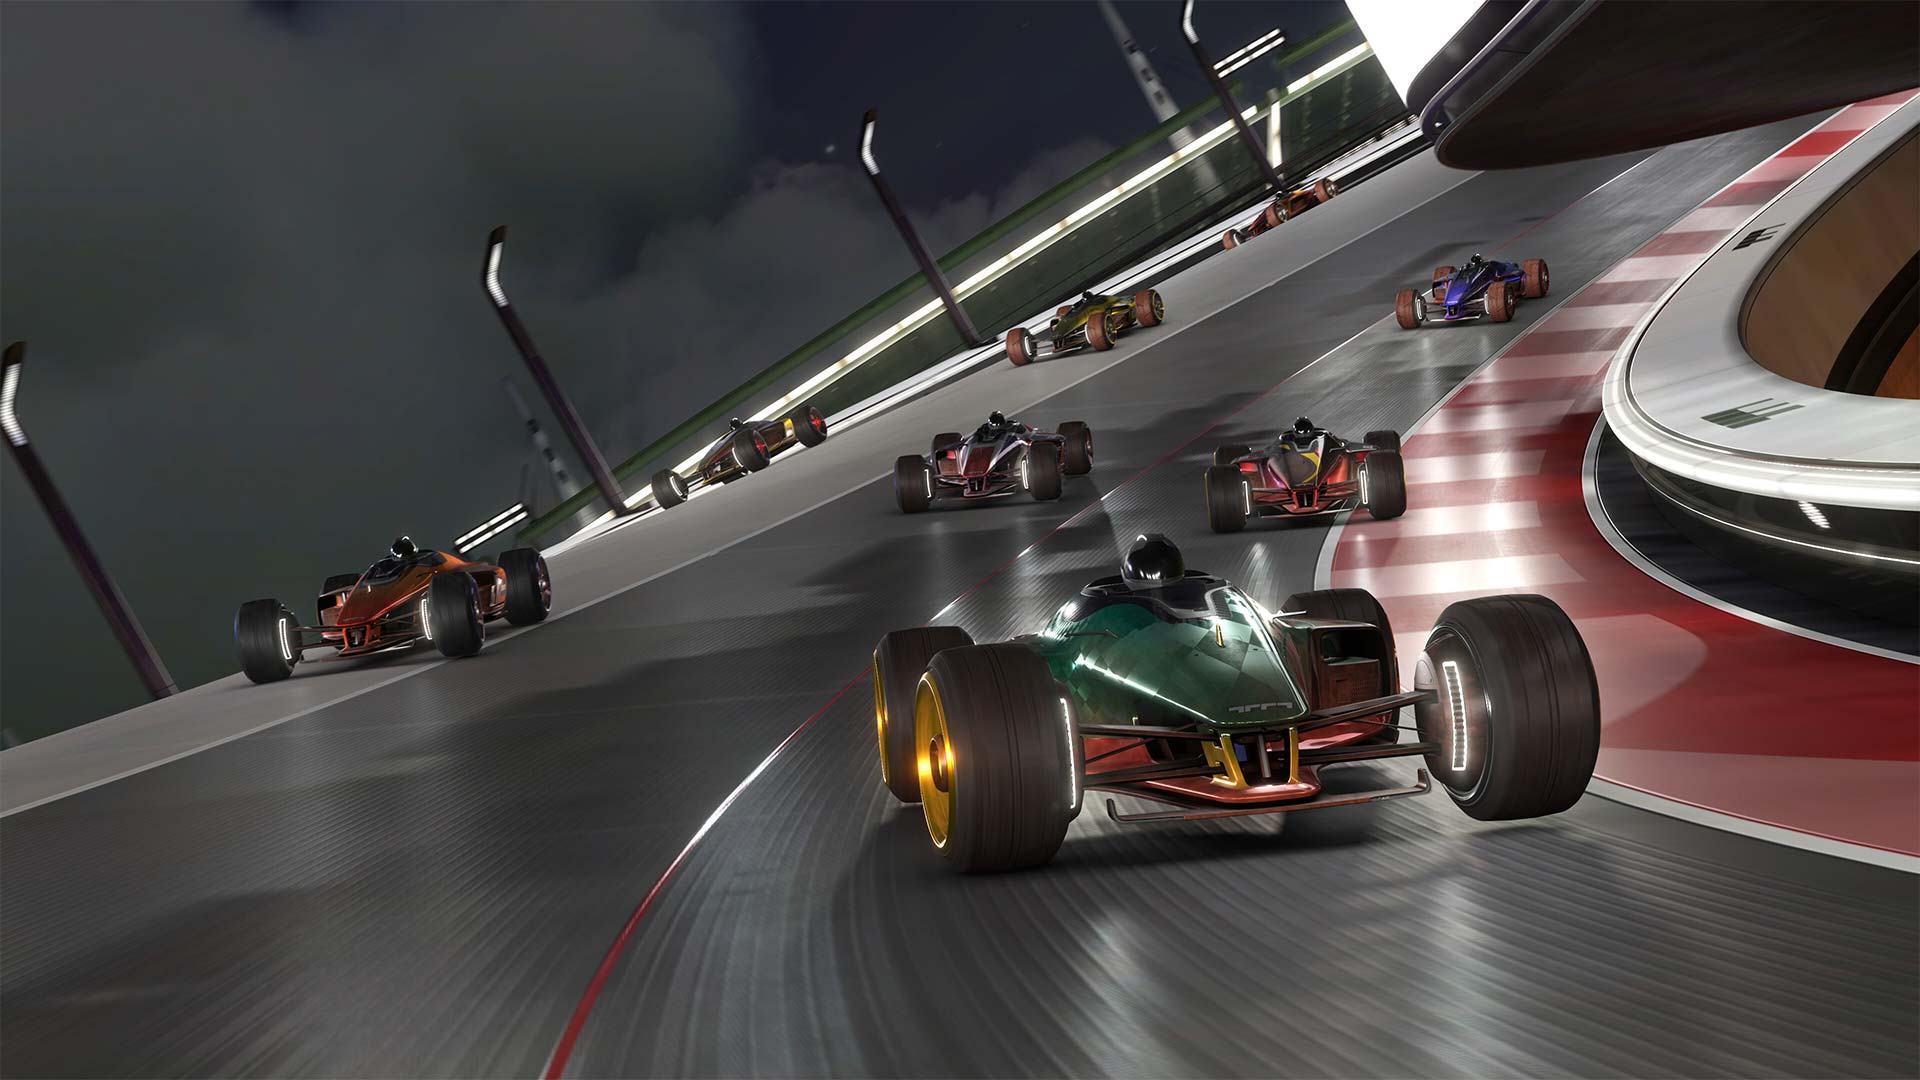 Trackmania от Ubisoft выйдет на приставках Xbox в начале 2023 года